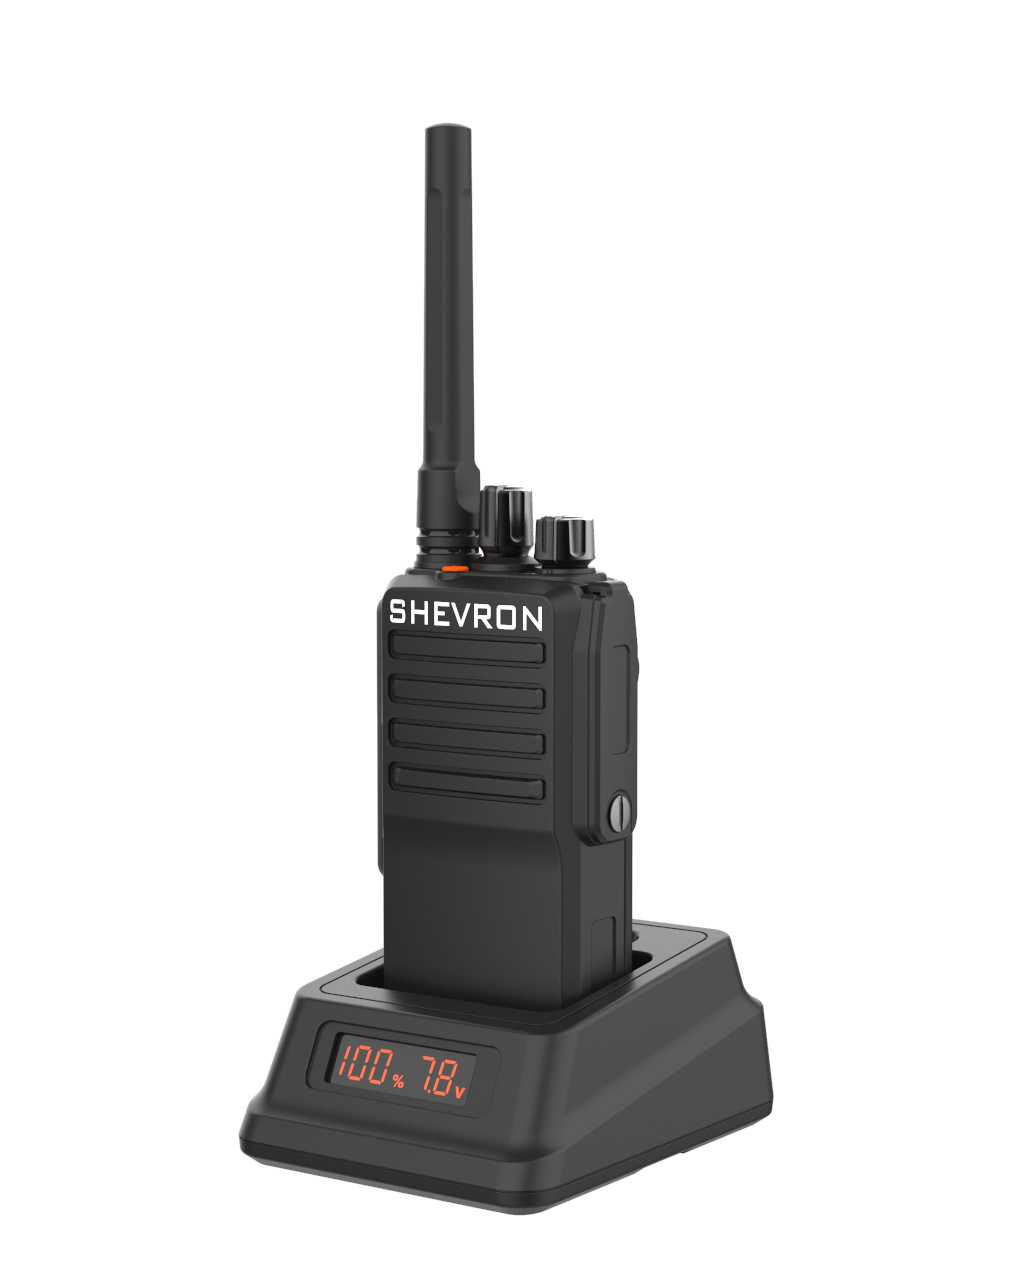 Рация Шеврон T-44 VHF - профессиональная цифровая радиостанция с поддержкой аналогового сигнала, предназначенная для работы в частотном диапазоне 136-174 МГц. 